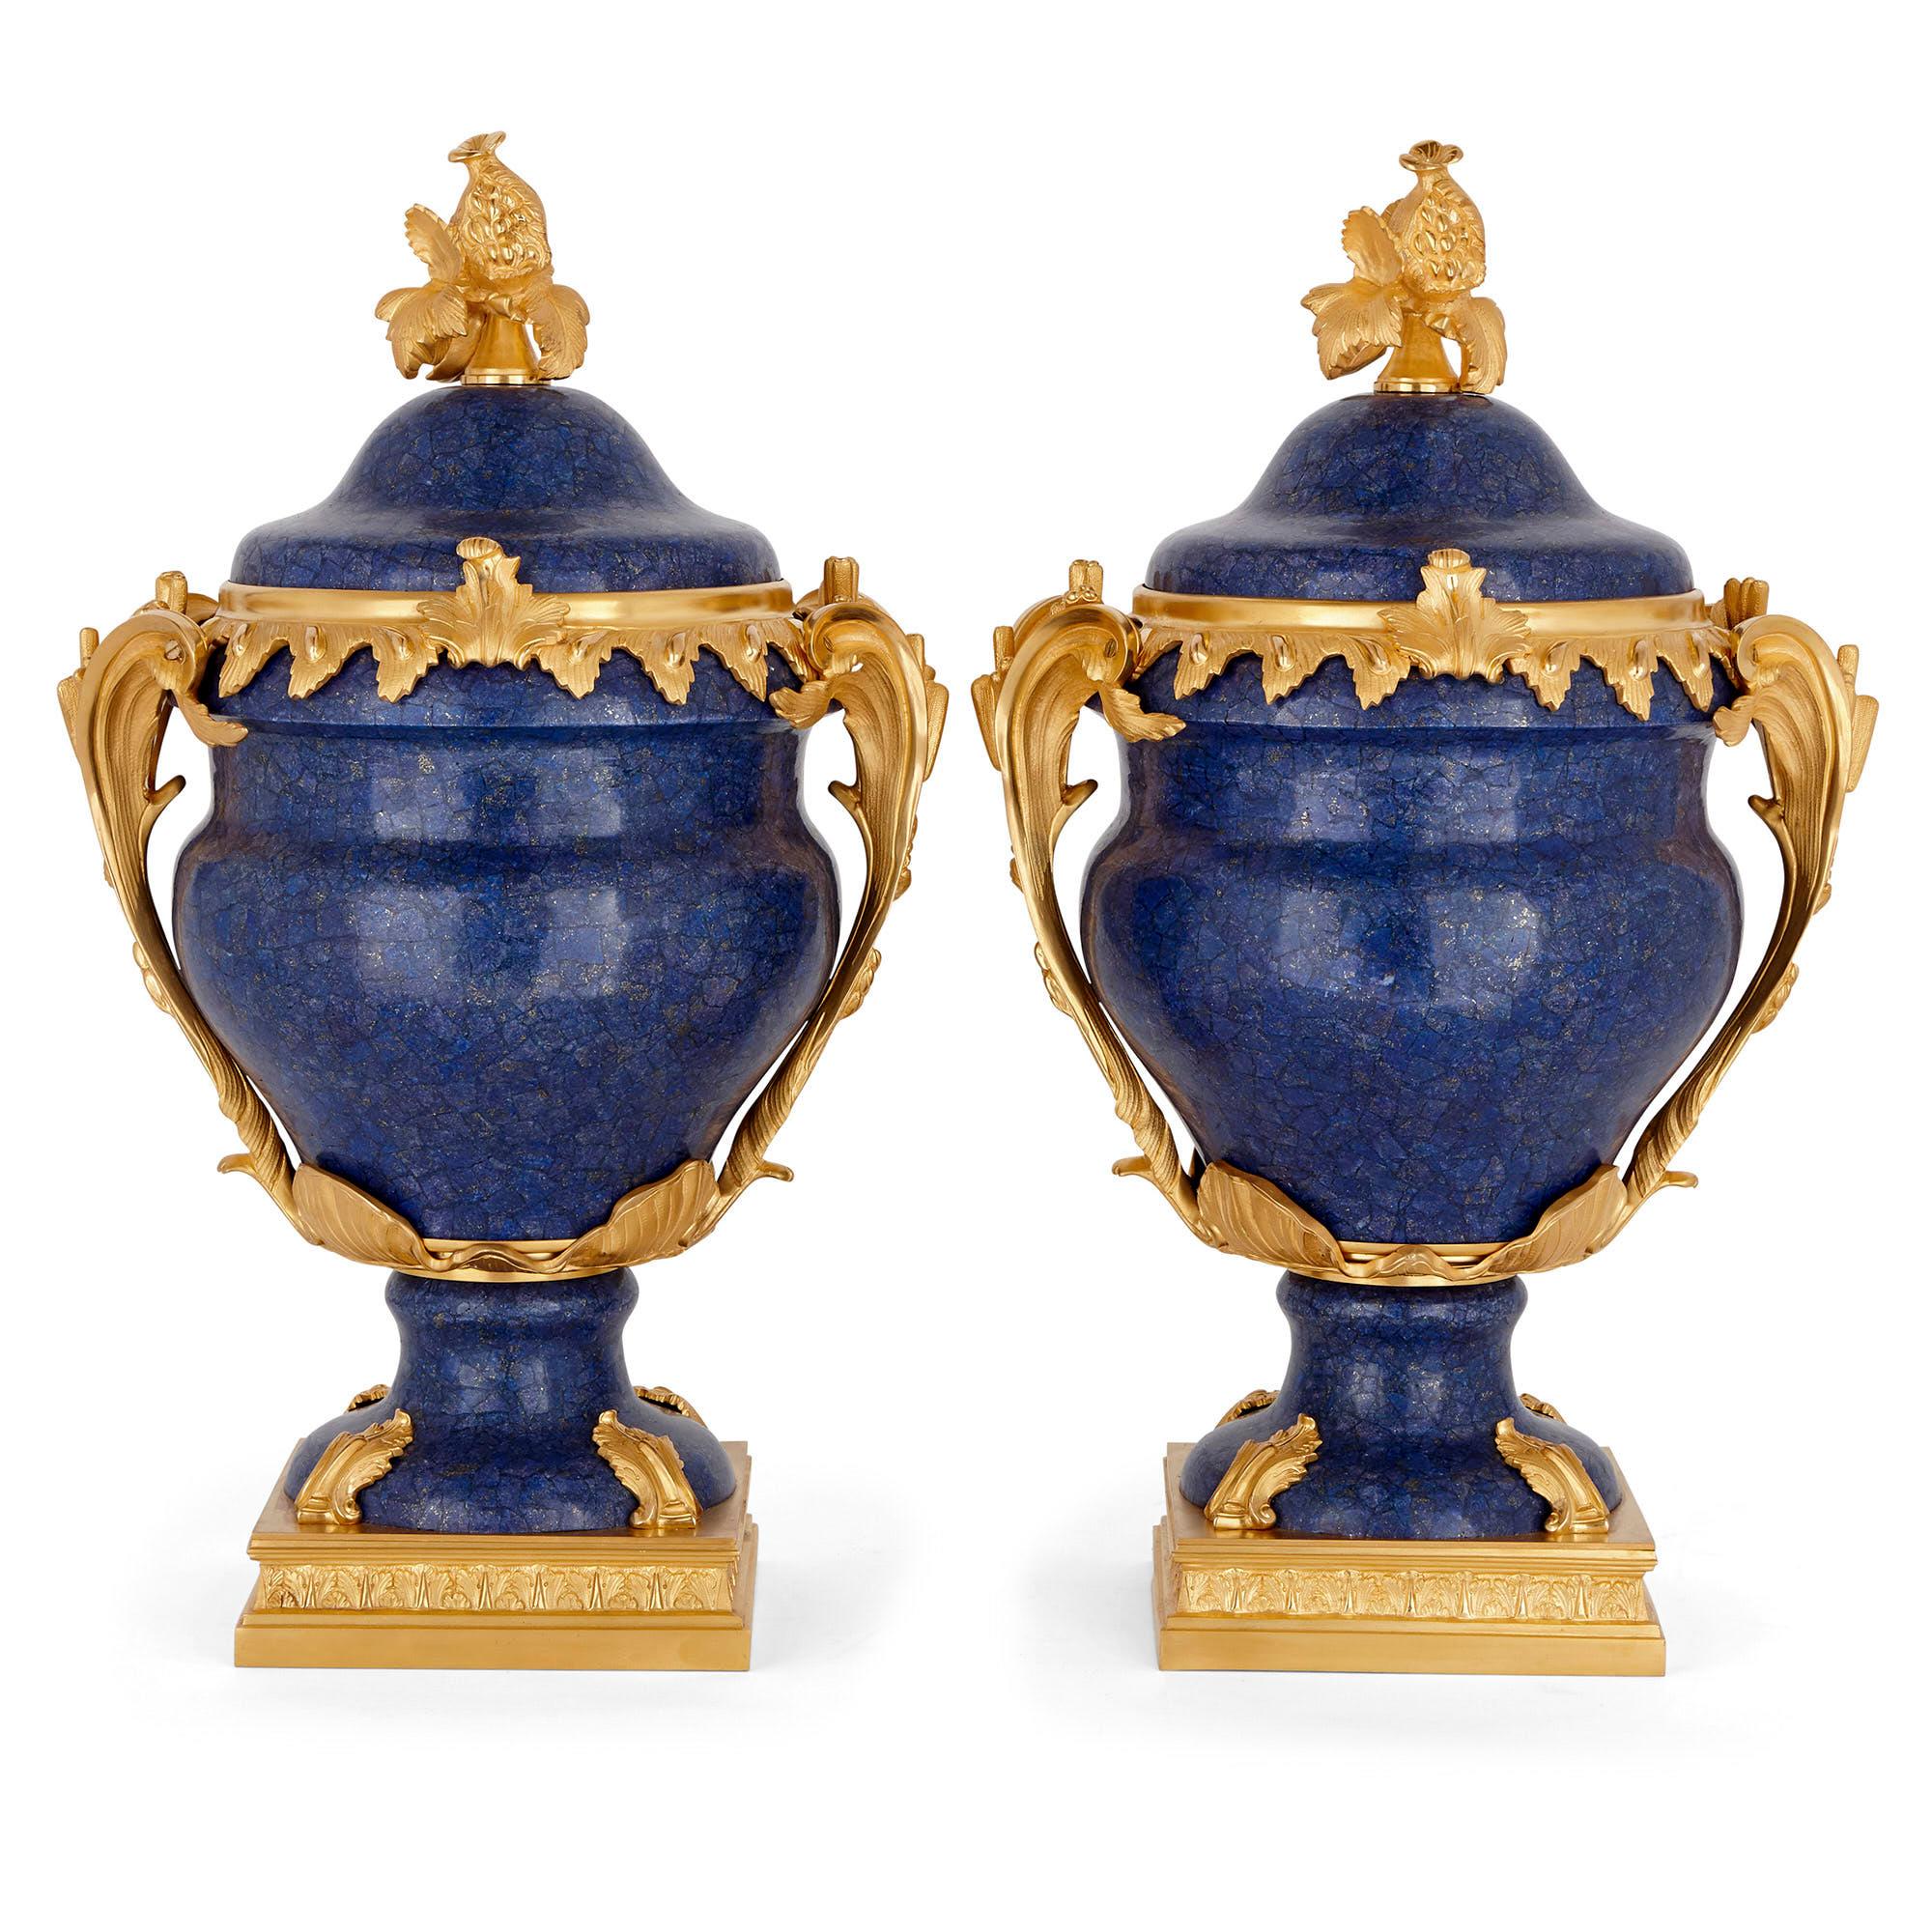 Jede Vase in Kraterform in diesem Paar ist aus vergoldeter Bronze mit Lapislazuli montiert. Die Vasen stehen auf quadratischen Sockeln aus vergoldeter Bronze, die mit Akanthusblattbeschlägen aus vergoldeter Bronze an den Füßen der Vasen befestigt